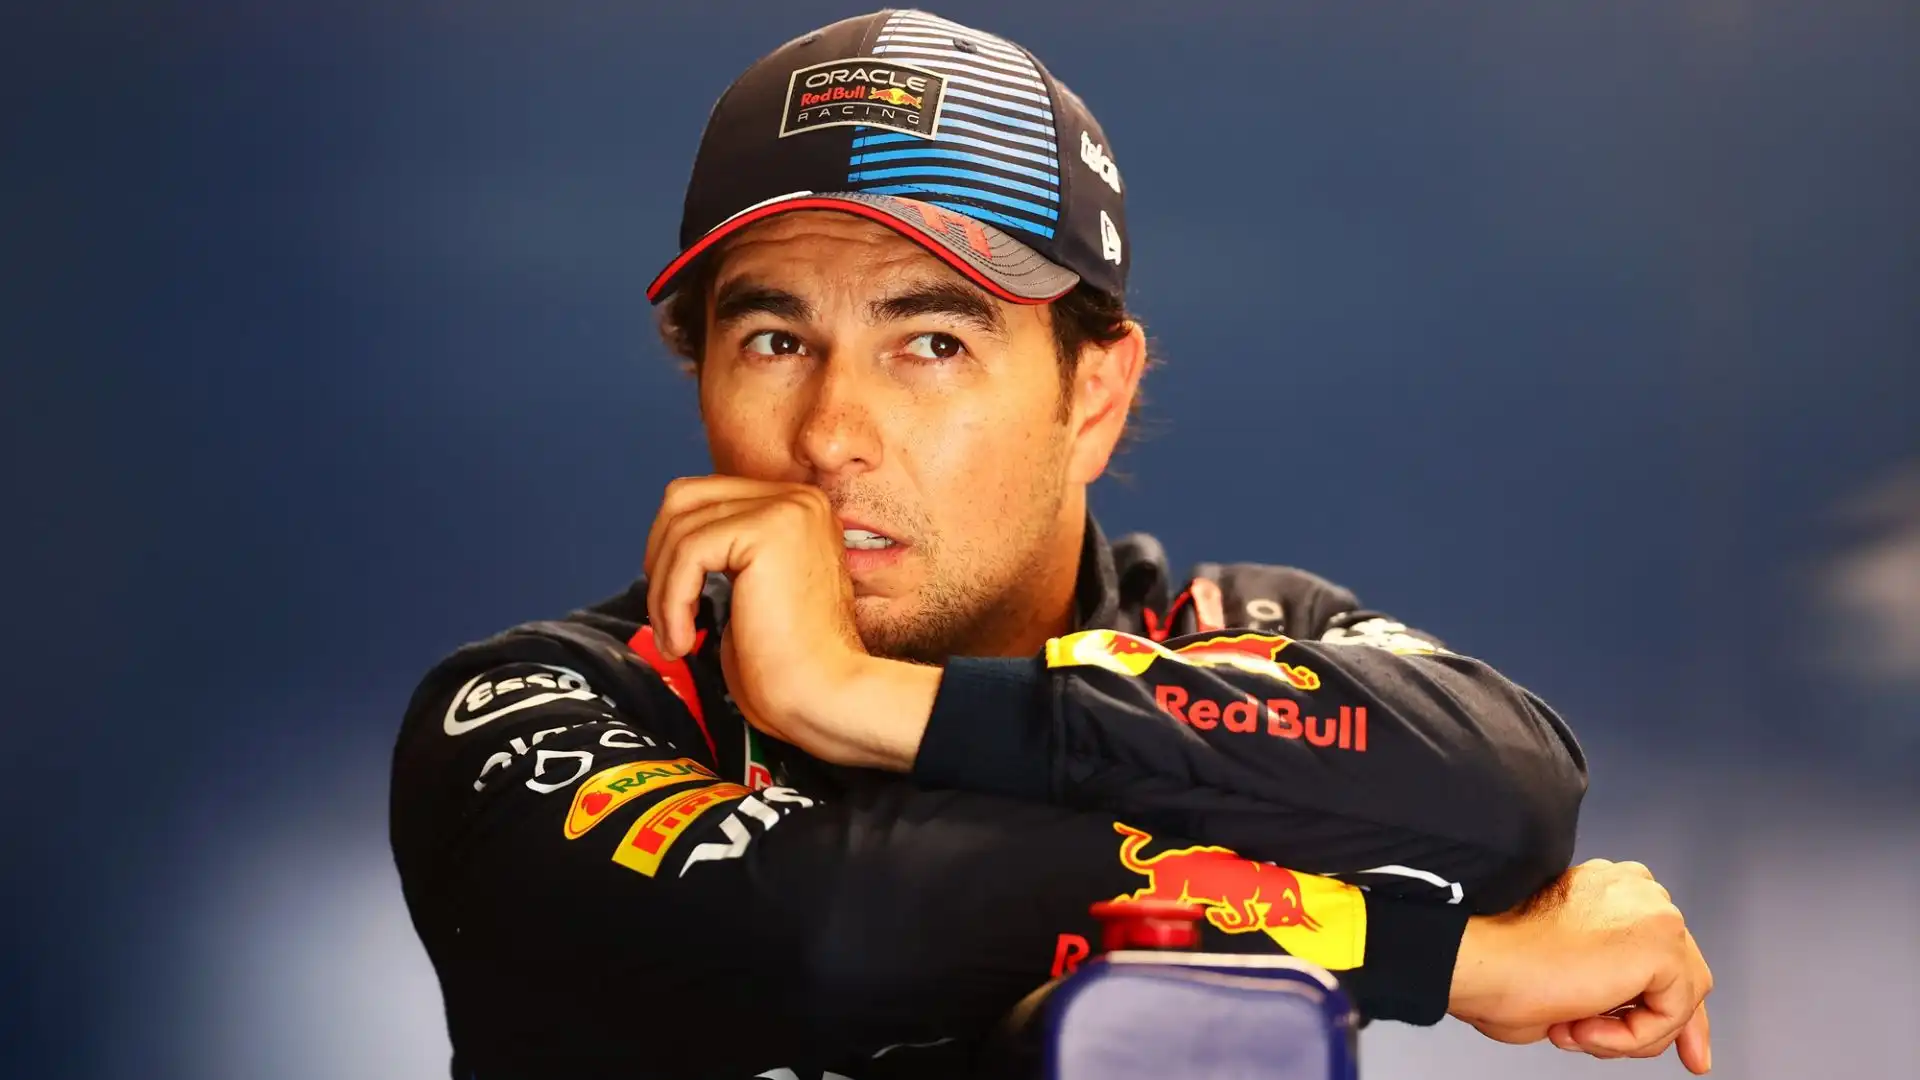 Il pilota della Red Bull è stato inoltre punito dai commissari di gara con una penalità di tre posizioni da scontare in Spagna: è stato sanzionato per aver percorso mezzo giro di pista con l'alettone posteriore pesantemente danneggiato